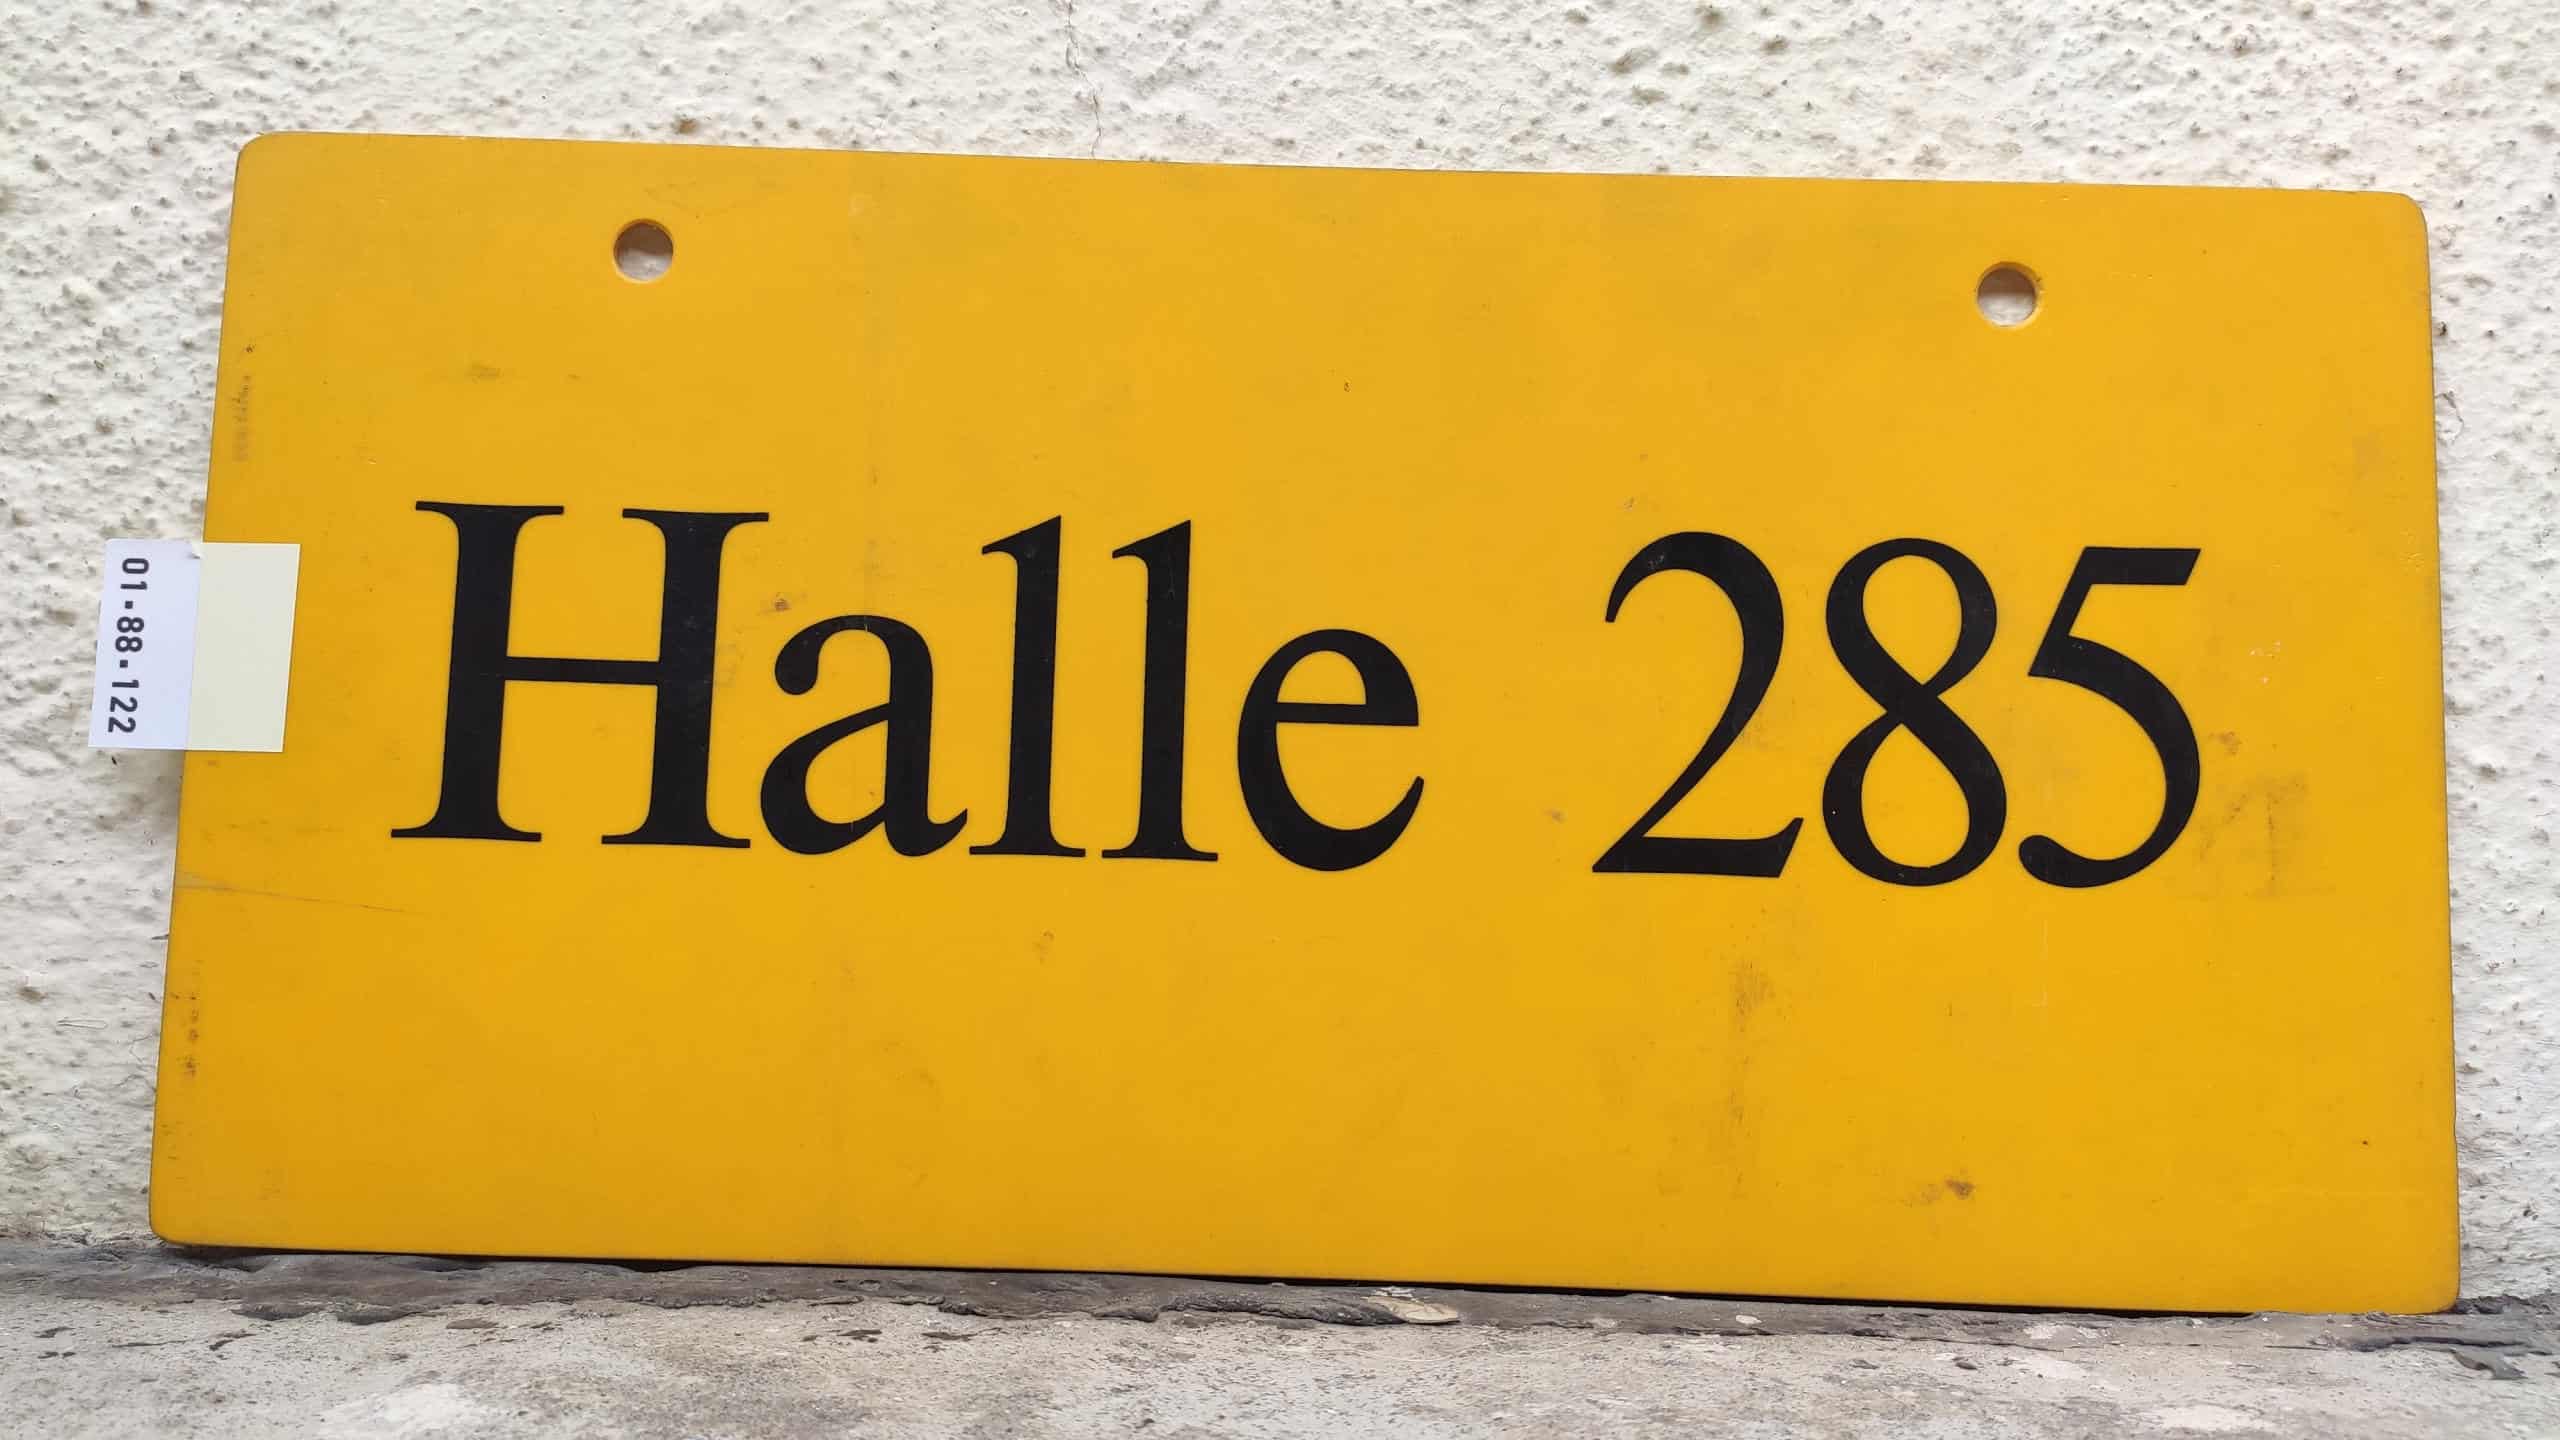 Halle 285